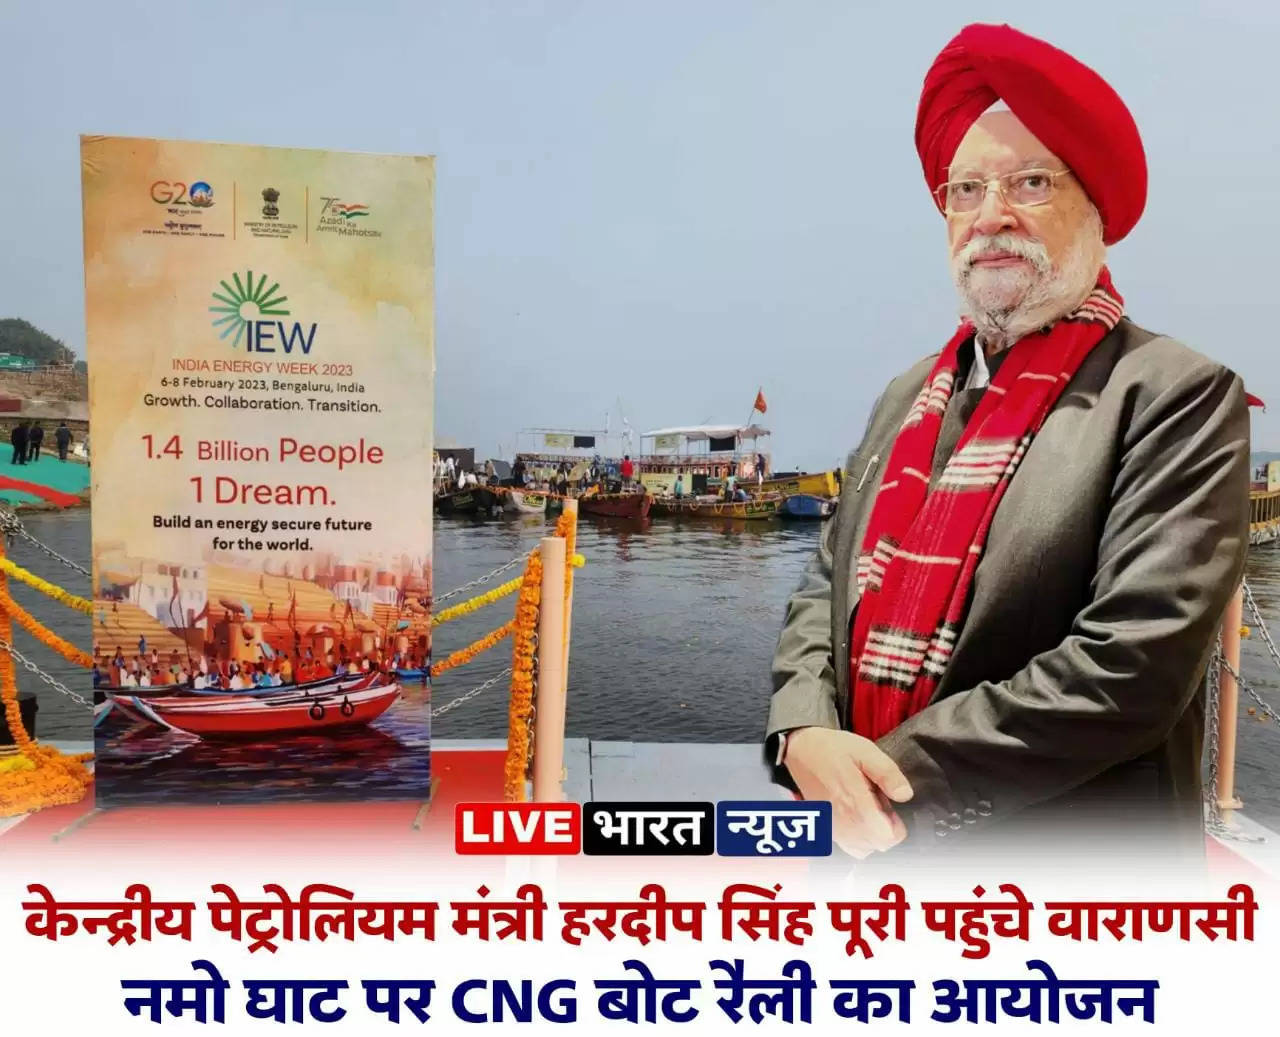 Varanasi news: केंद्रीय पेट्रोलियम मंत्री हरदीप सिंह पूरी पहुंचे वाराणसी, नमो घाट पर होगा CNG बोट रैली का आयोजन, चेत सिंह घाट पर लेजर शो